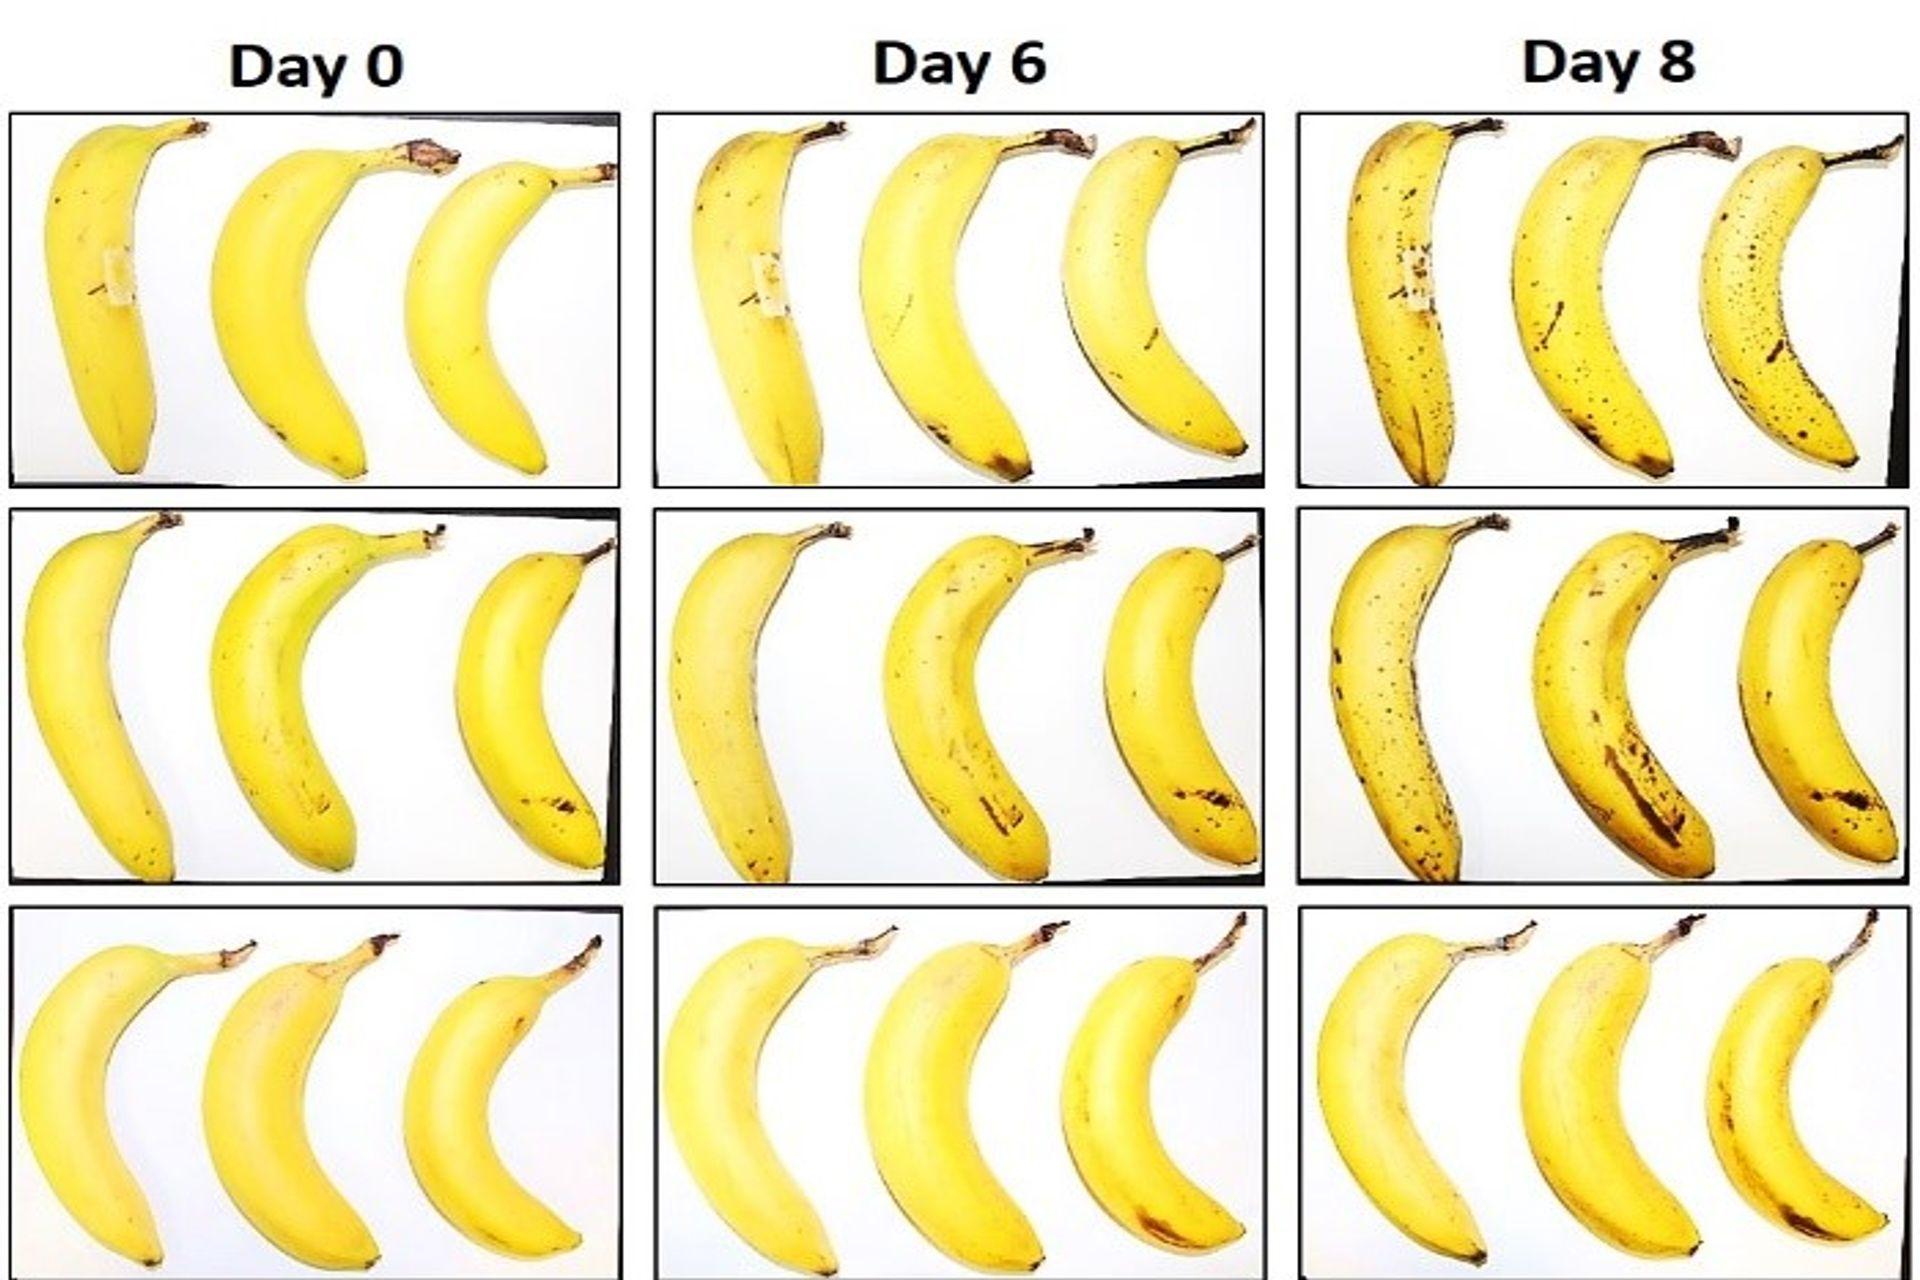 กล้วยสามลูกภายใต้ EMPA และ Lidl สวิตเซอร์แลนด์ในการทดสอบการอนุรักษ์โดยมีและไม่มีการห่อเซลลูโลสเป็นเส้นใยหลังจากศูนย์, 6 และ 8 วัน